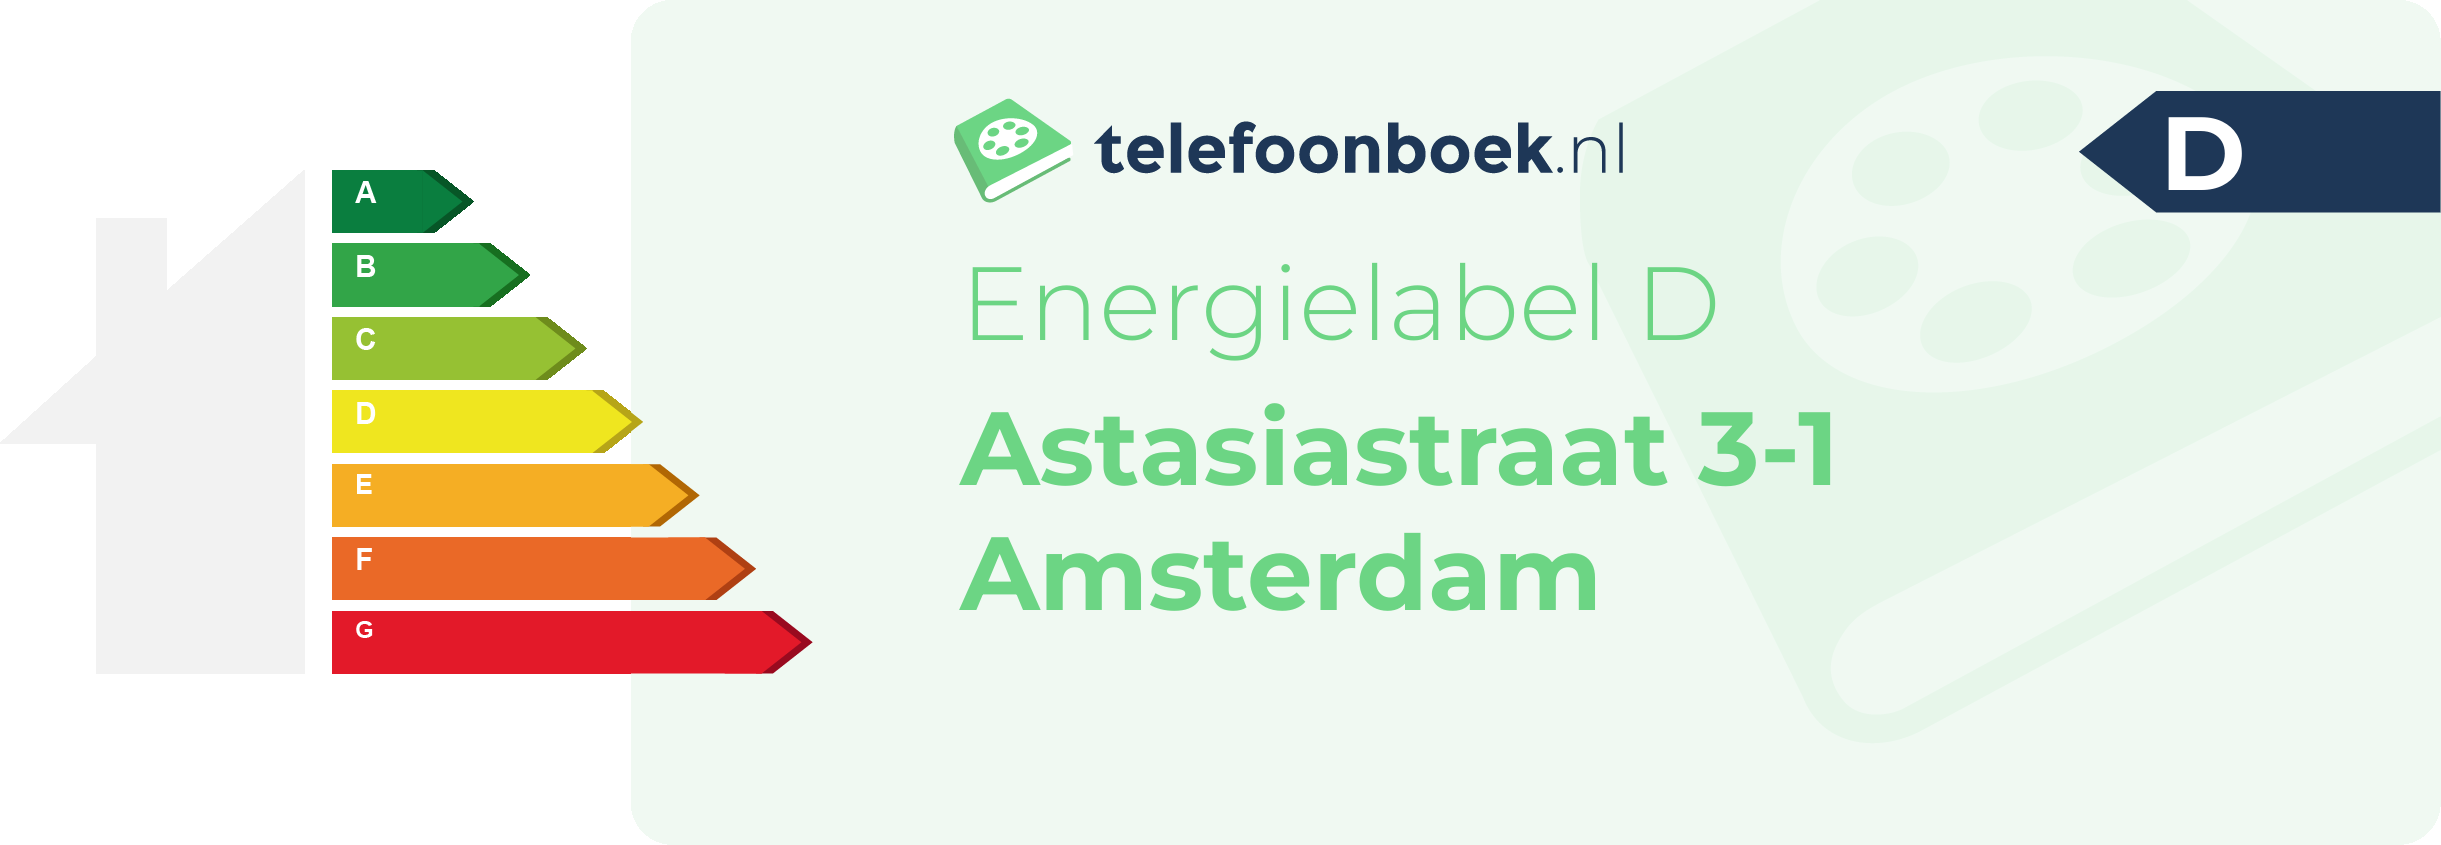 Energielabel Astasiastraat 3-1 Amsterdam